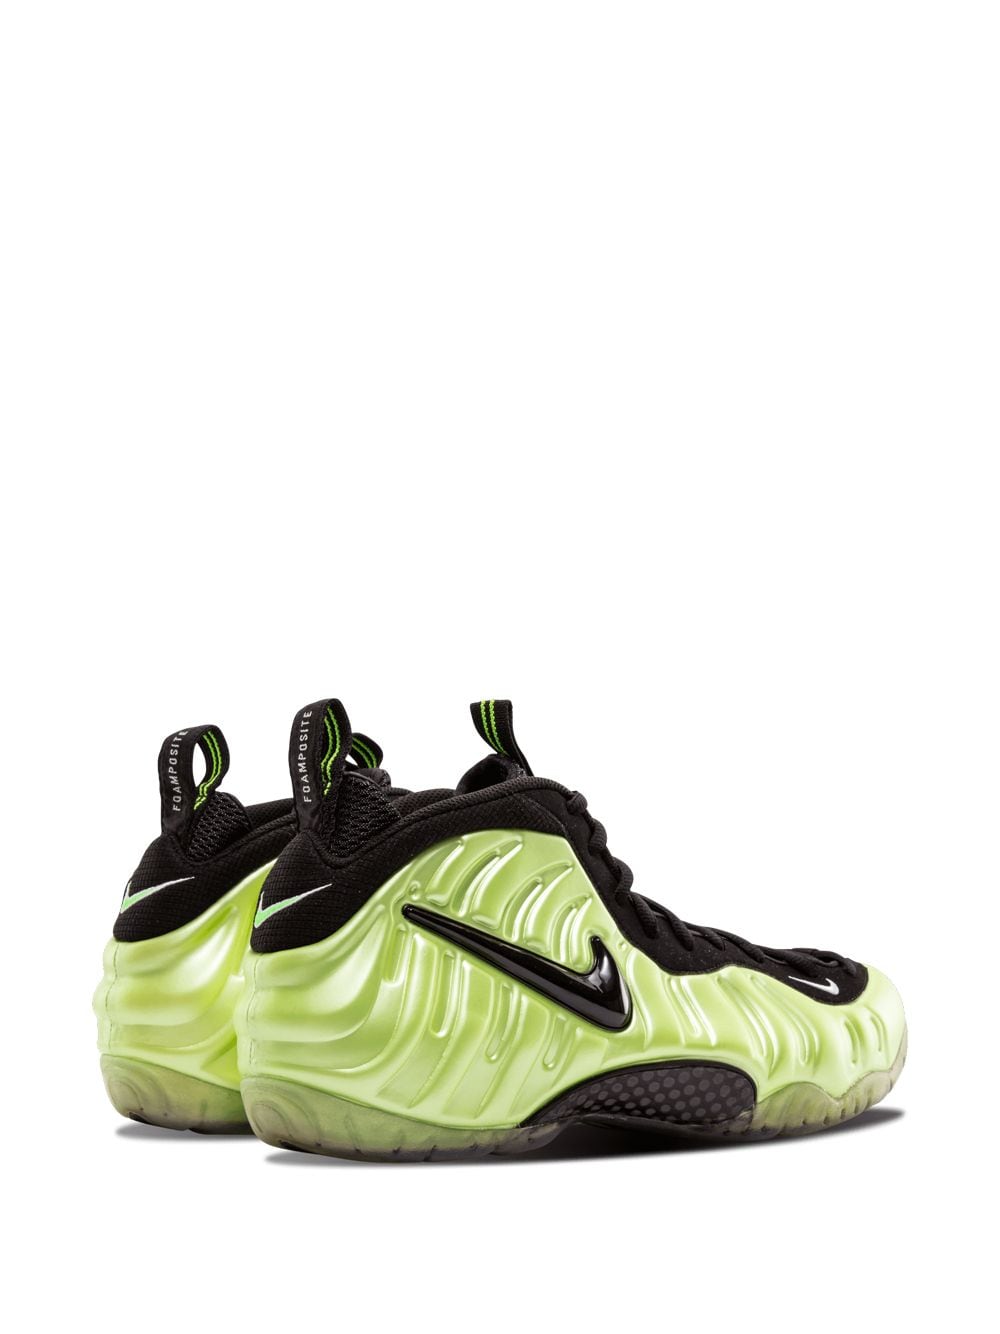  Nike Air Foamposite Pro 2010 Sneakers - Green 